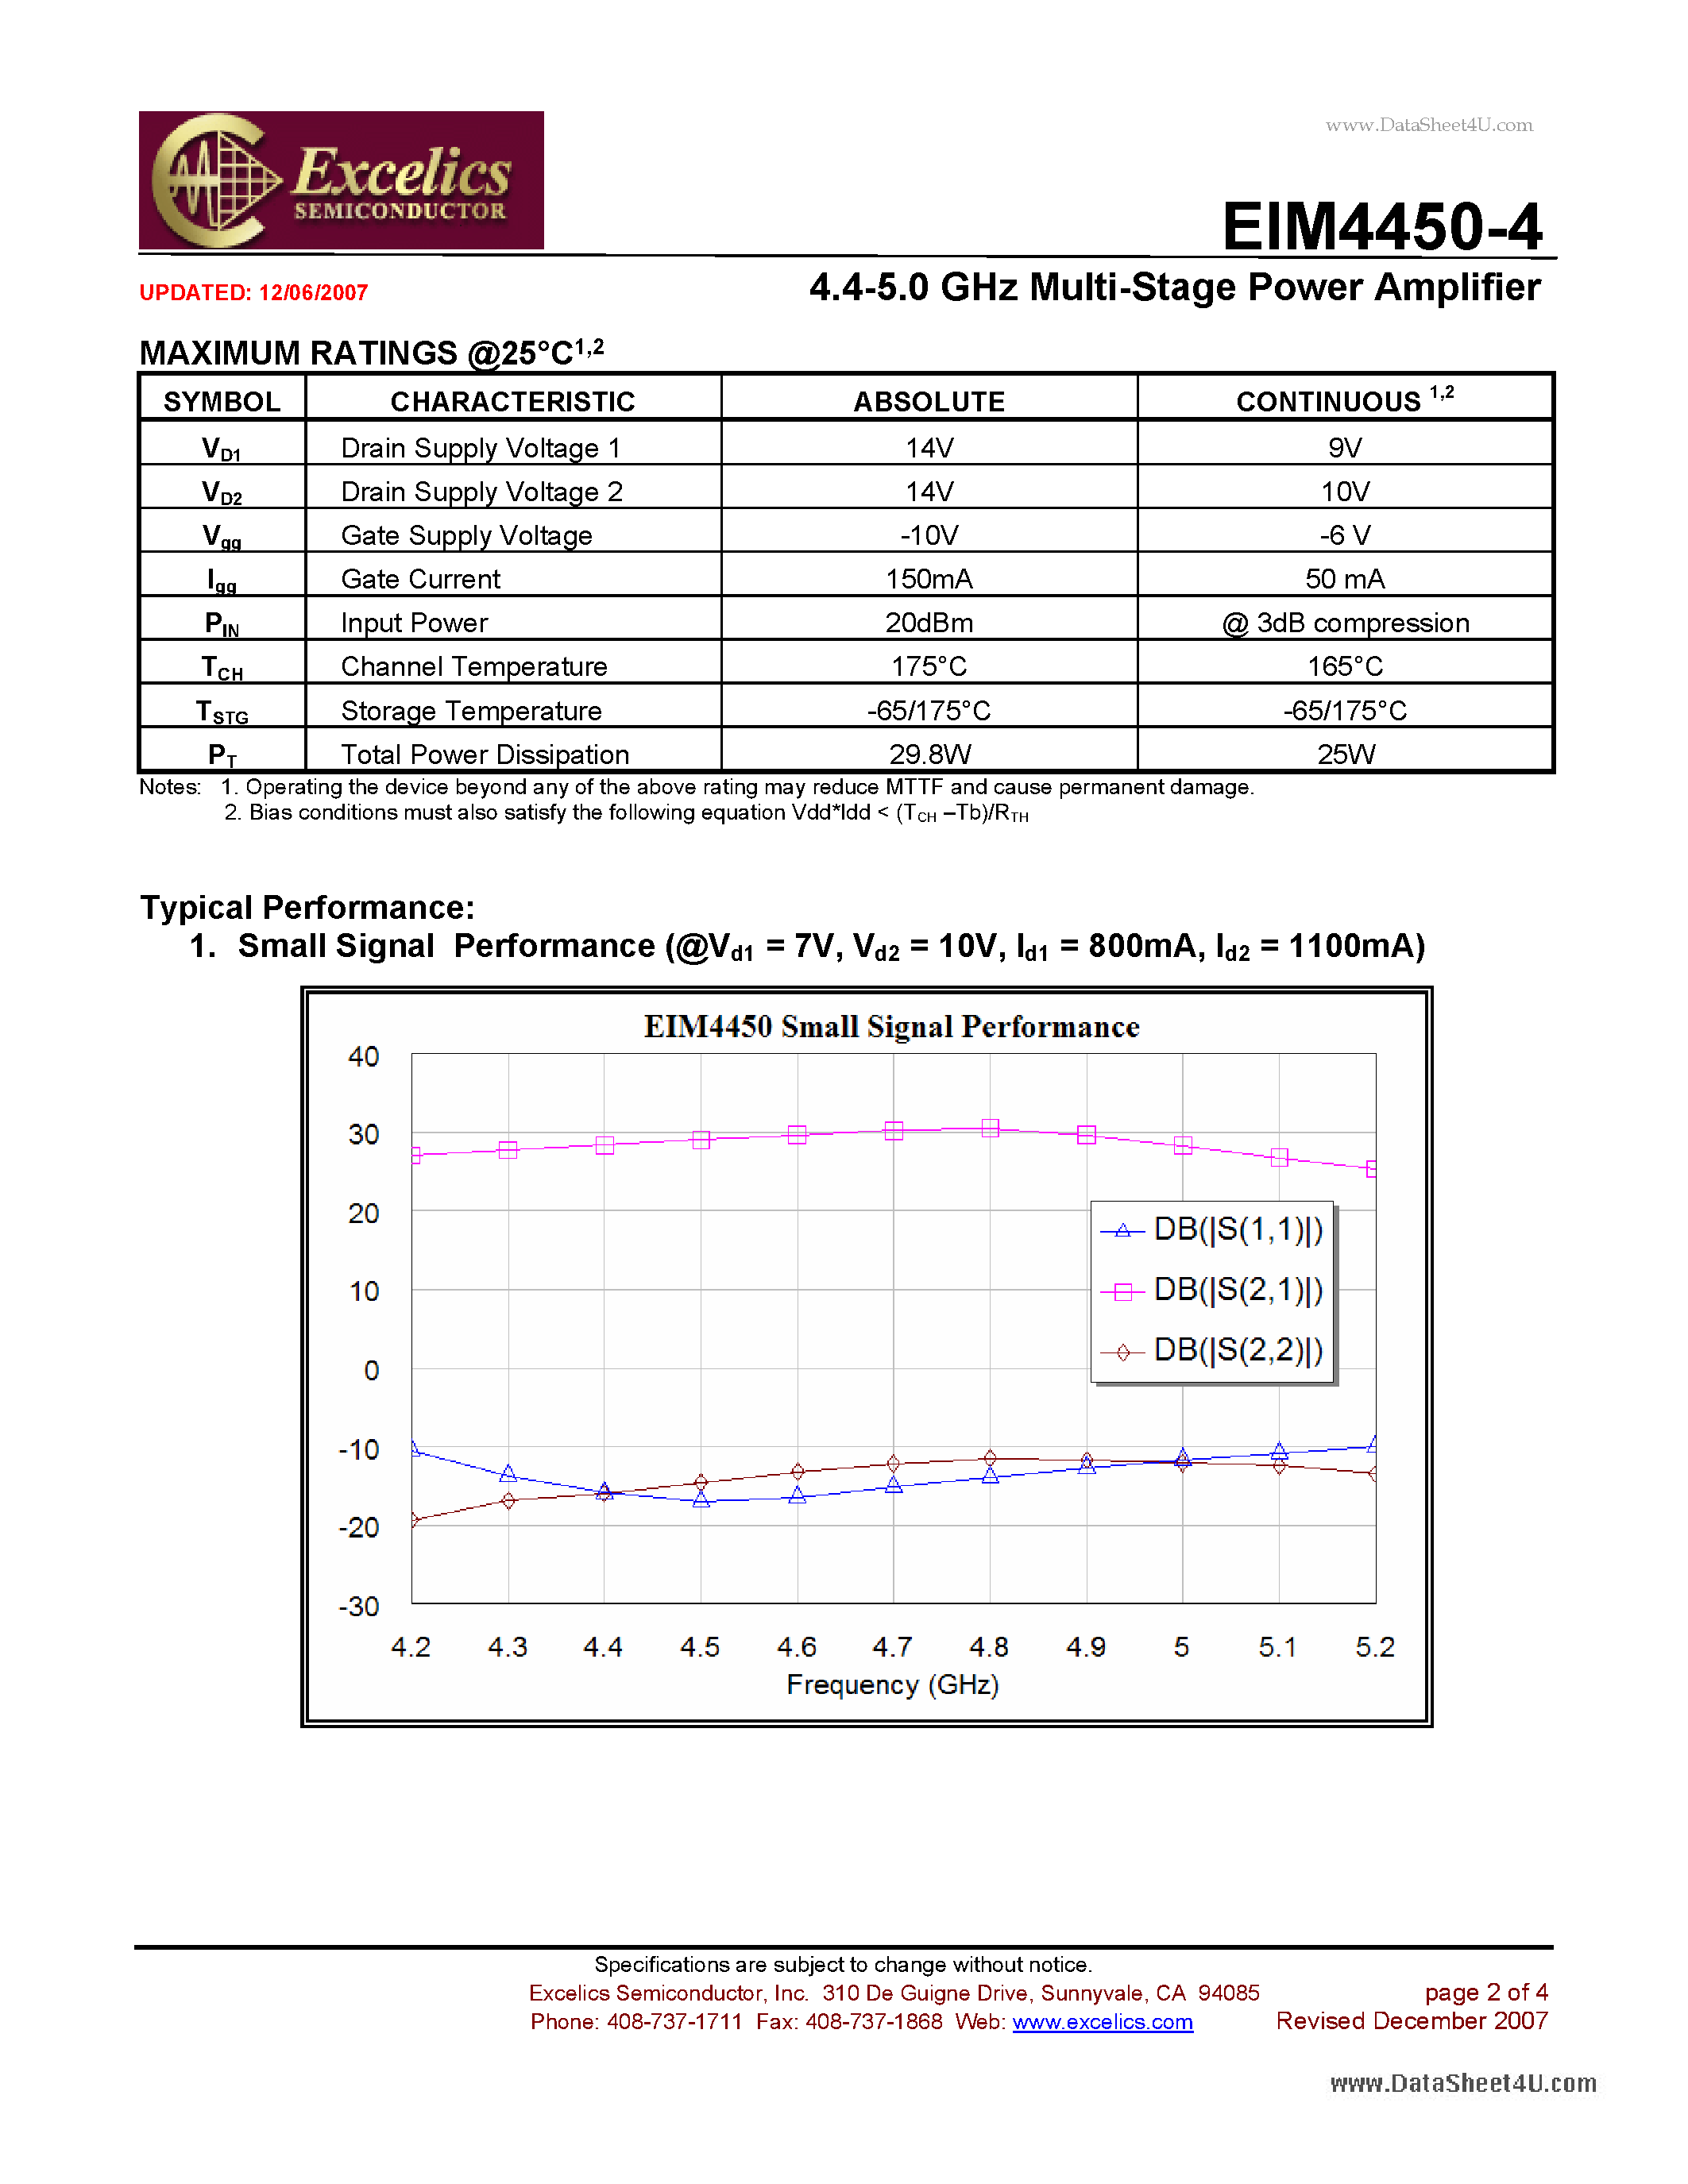 Datasheet EIM4450-4 - 4.4-5.0 GHz Multi-Stage Power Amplifier page 2